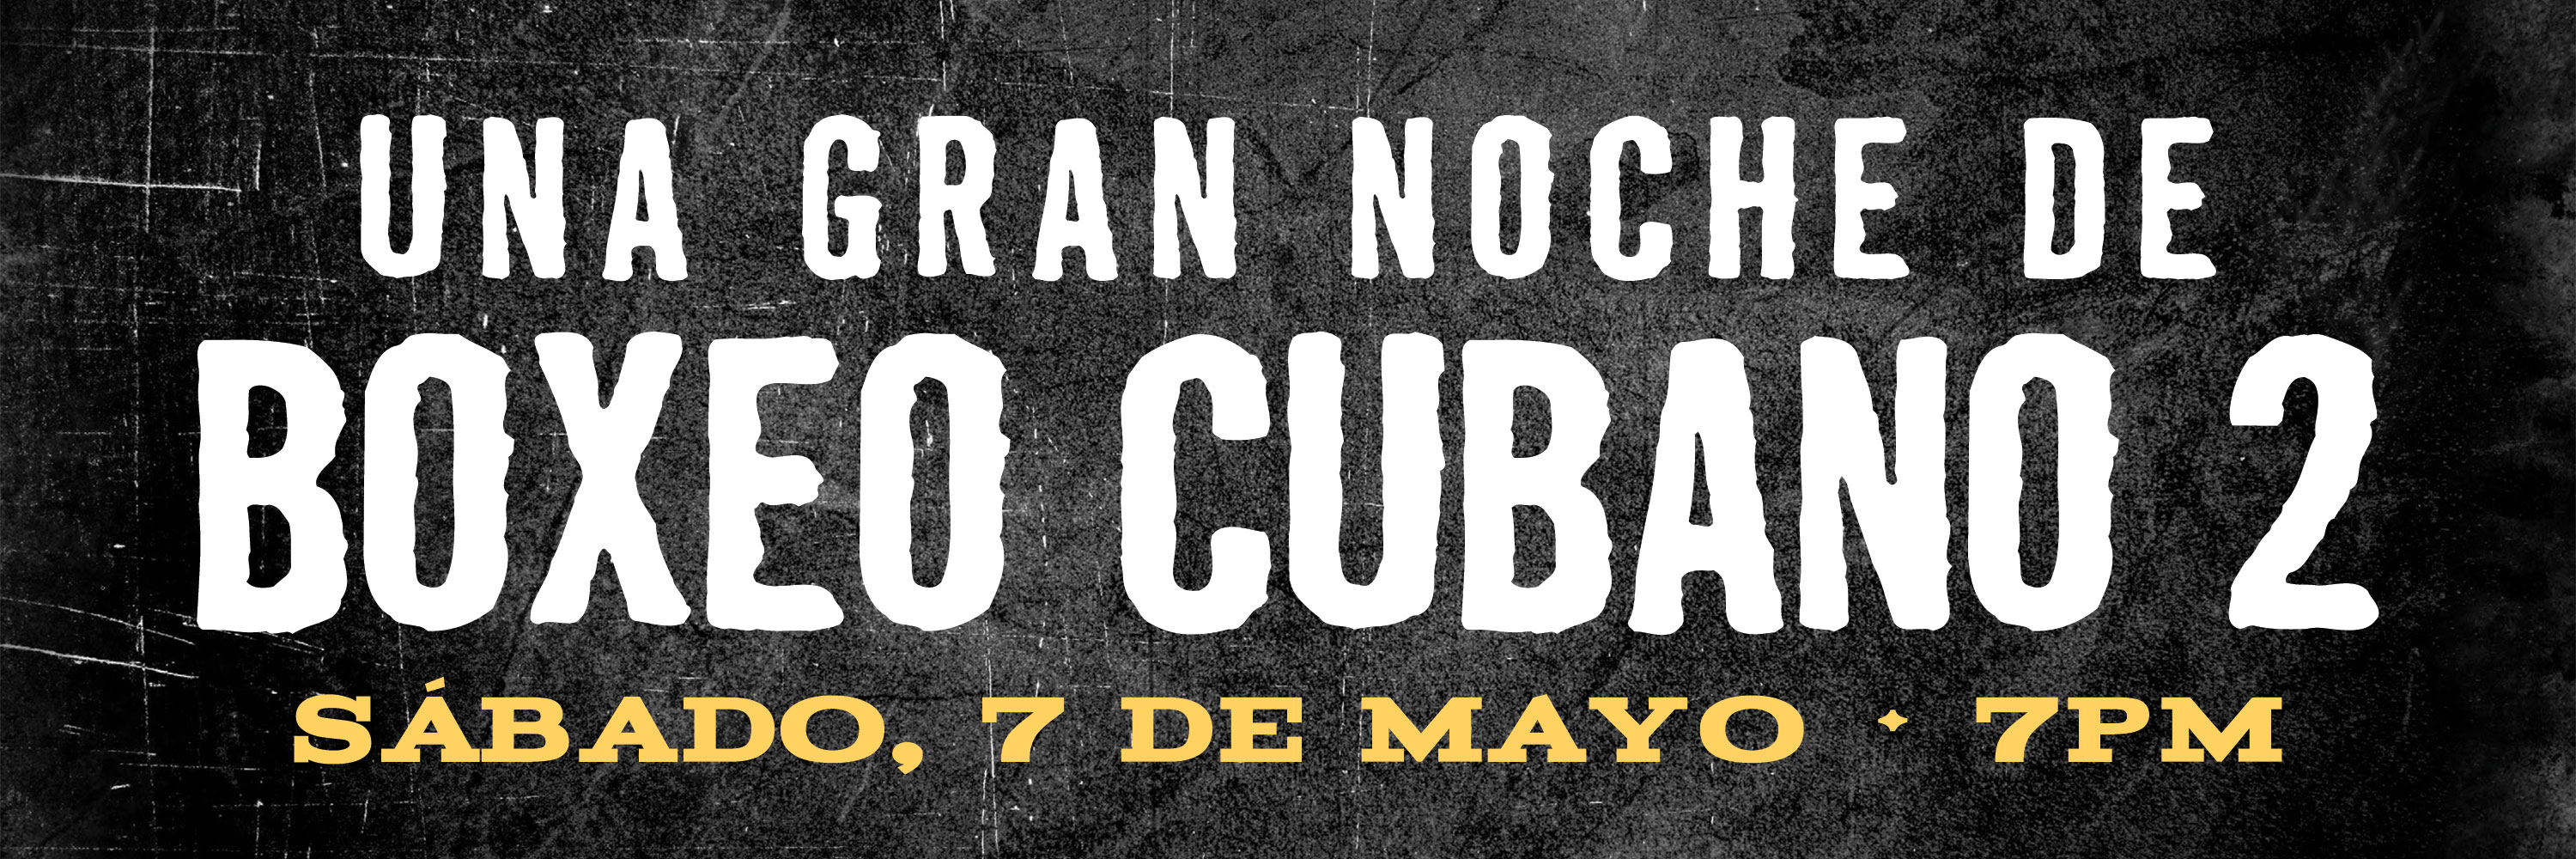 Una Gran Noche De Boxeo Cubano 2 | Sabado, 7 De Mayo • 7PM